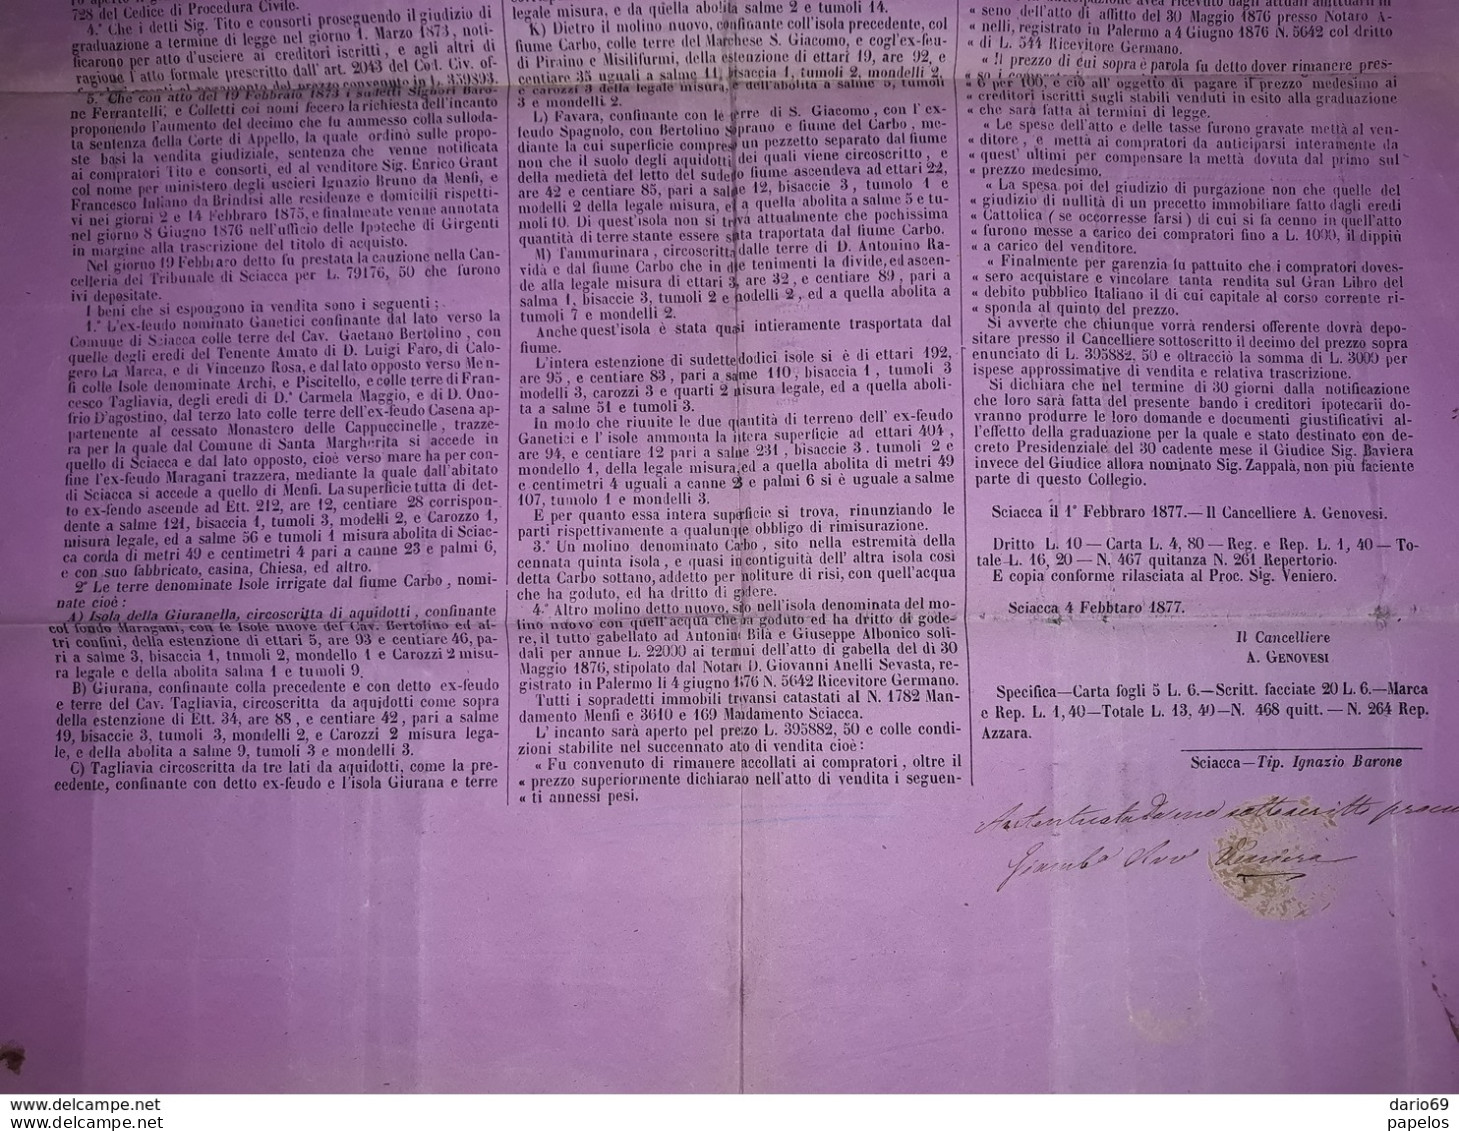 1877 MANIFESTO SCIACCA  AGRIGENTO  BANDO PER VENDITA GIUDIZIARIA  CON MARCHE DA BOLLO - Documents Historiques